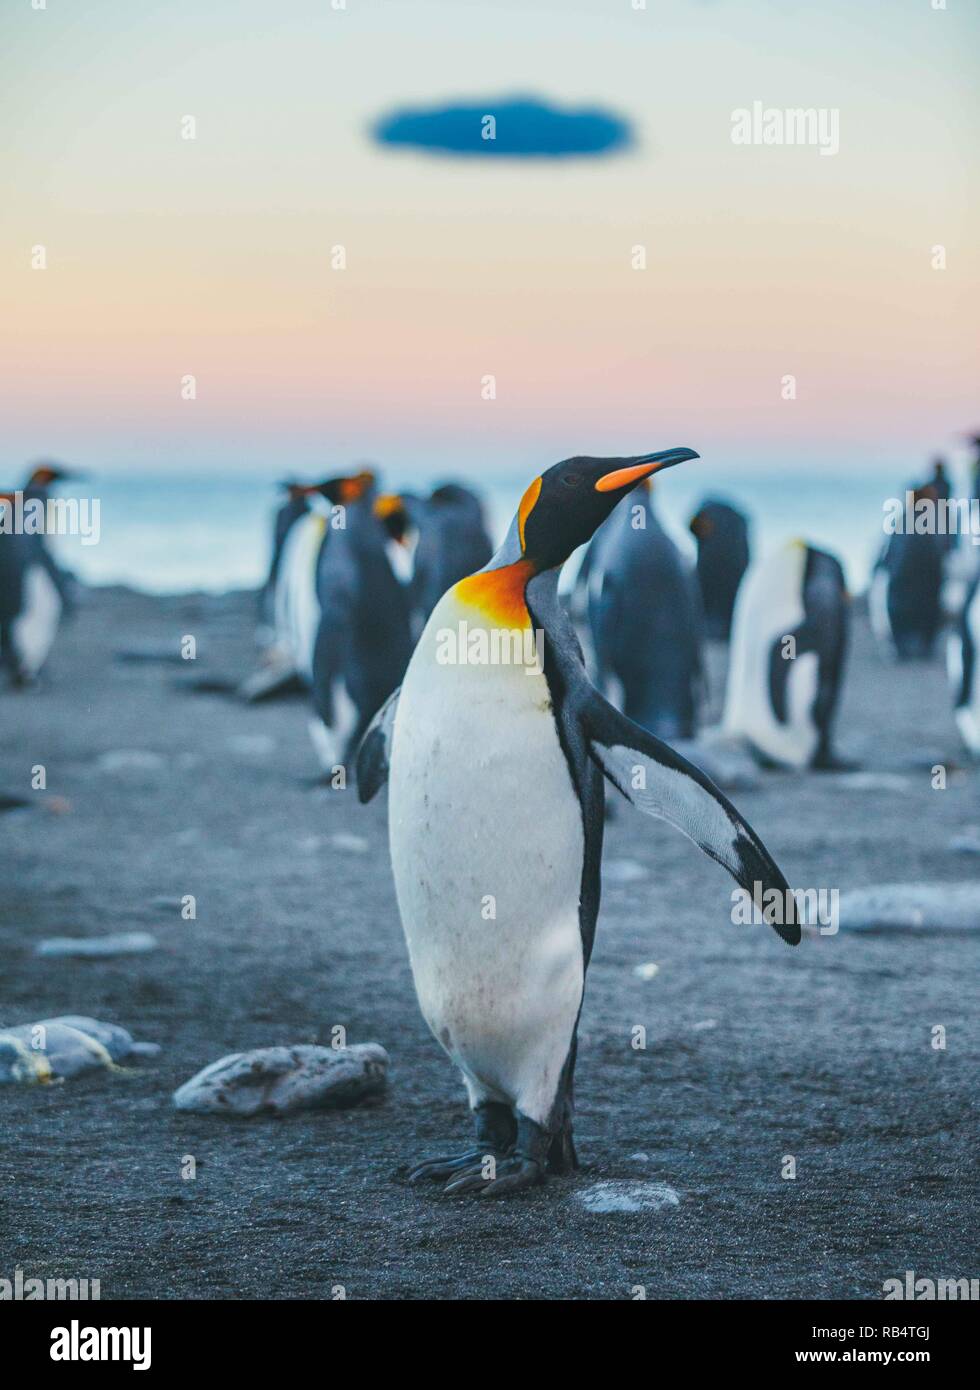 Des images incroyables, la capture d'une 'mer' de pingouins avec des centaines d'oiseaux à perte de vue. Les superbes clichés montrent les pingouins gatheri Banque D'Images